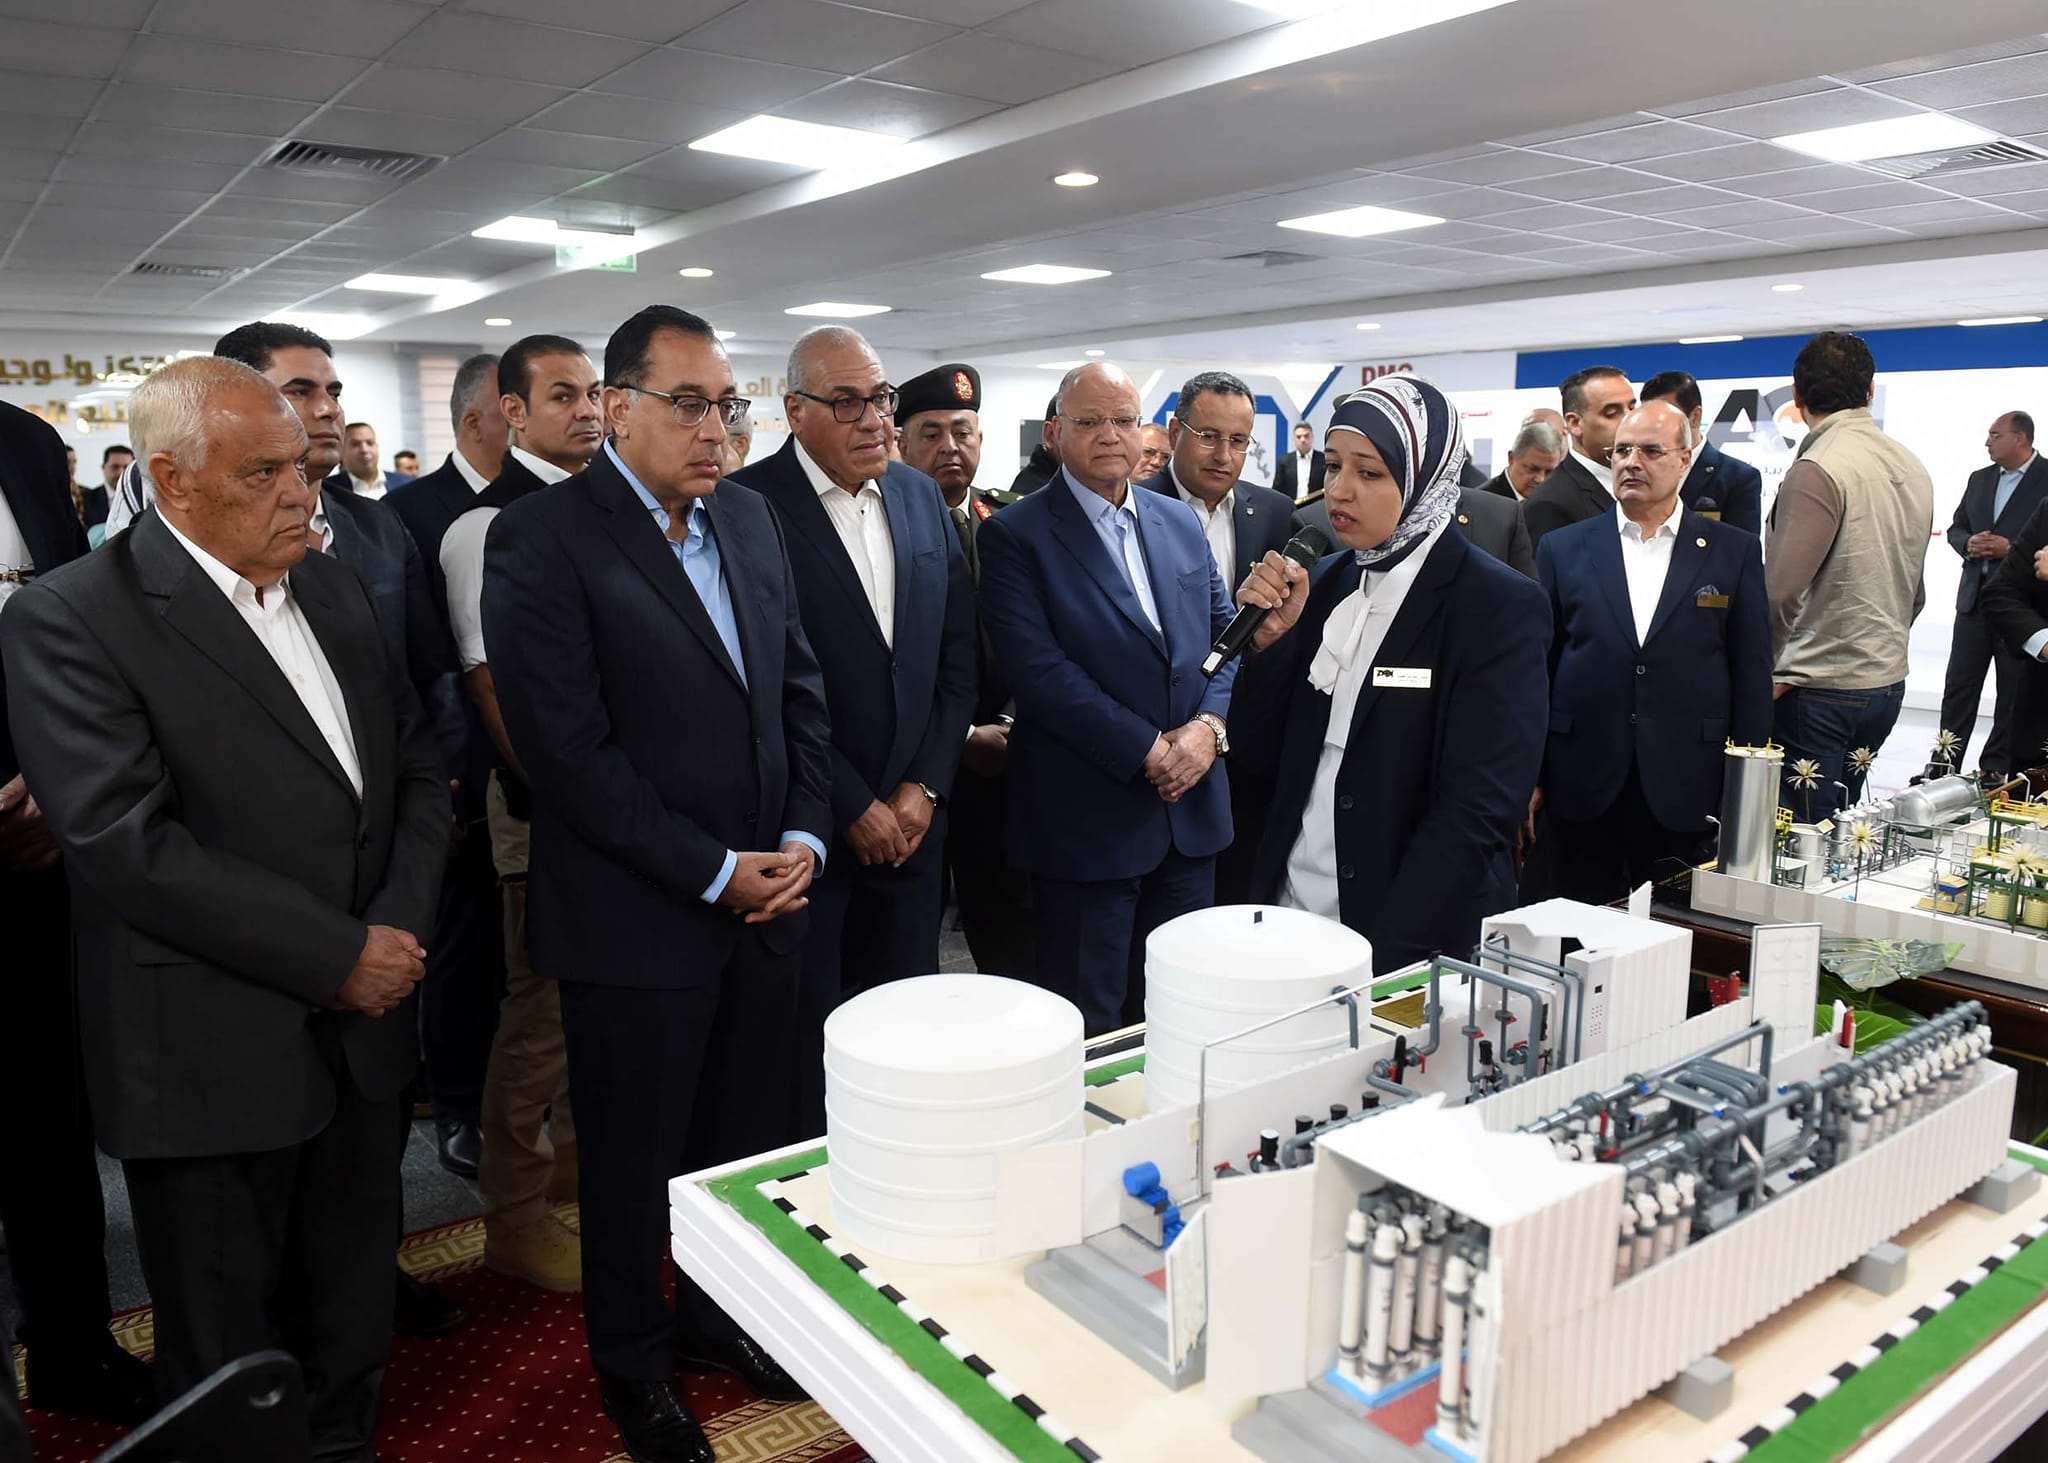 مصطفى مدبولي يشهد افتتاح مركز التصنيع الرقمي بحلوان